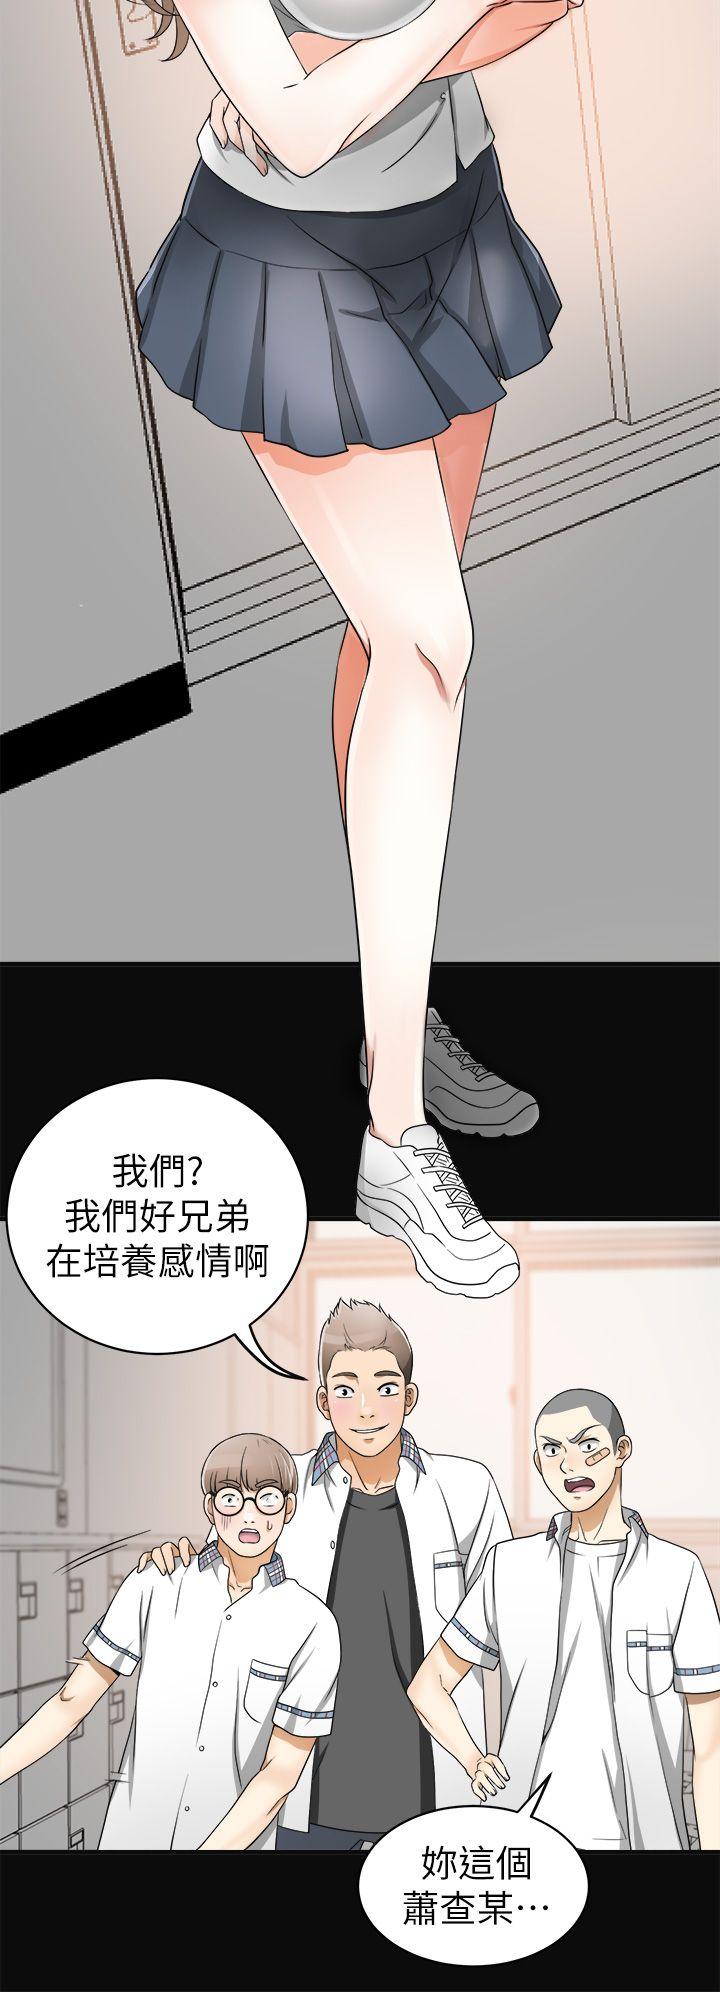 韩国污漫画 我要搶走她 第1话-令人无法抗拒的提议 26